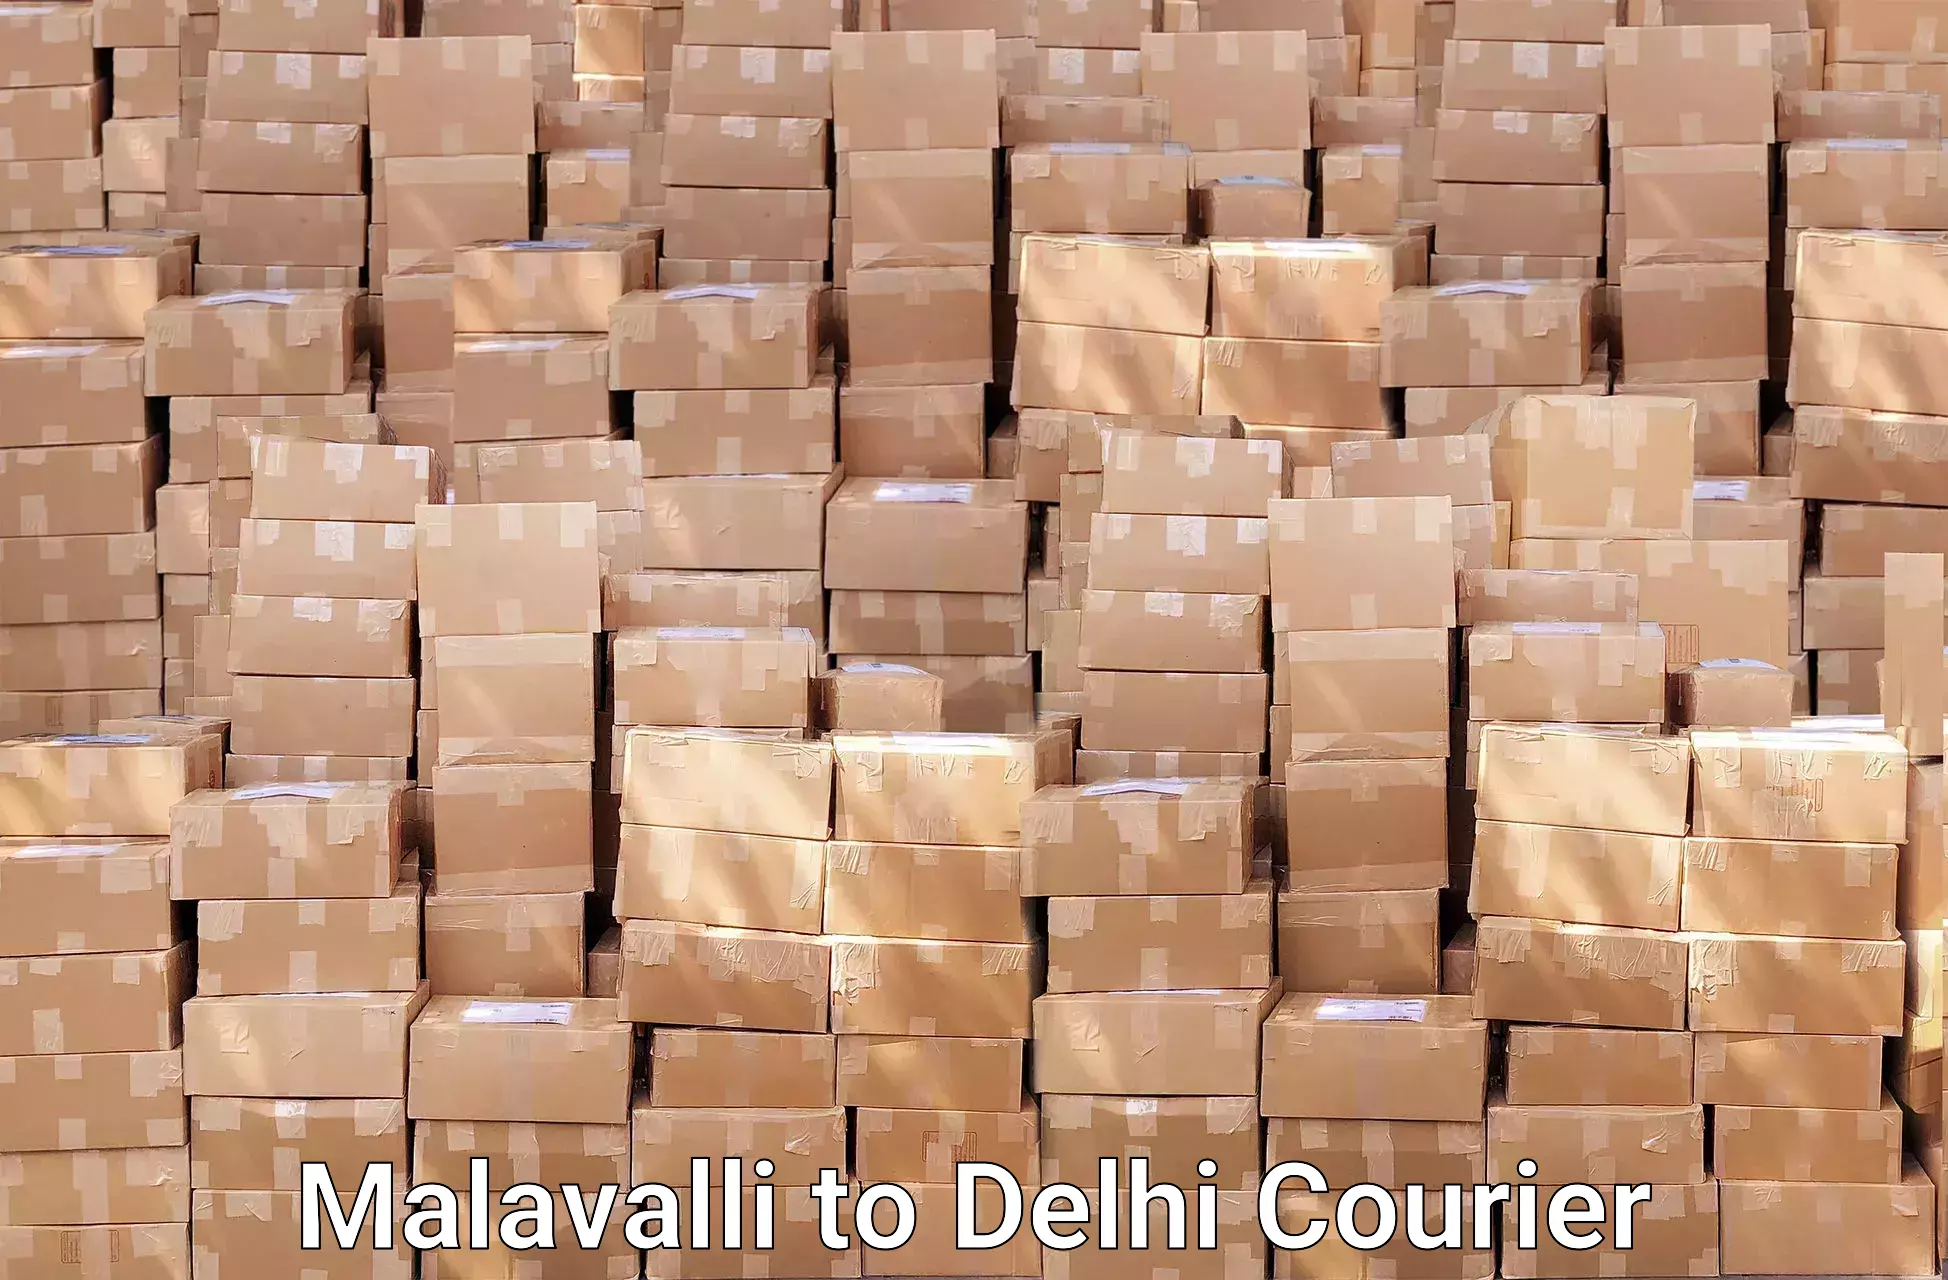 Furniture moving specialists Malavalli to Jawaharlal Nehru University New Delhi